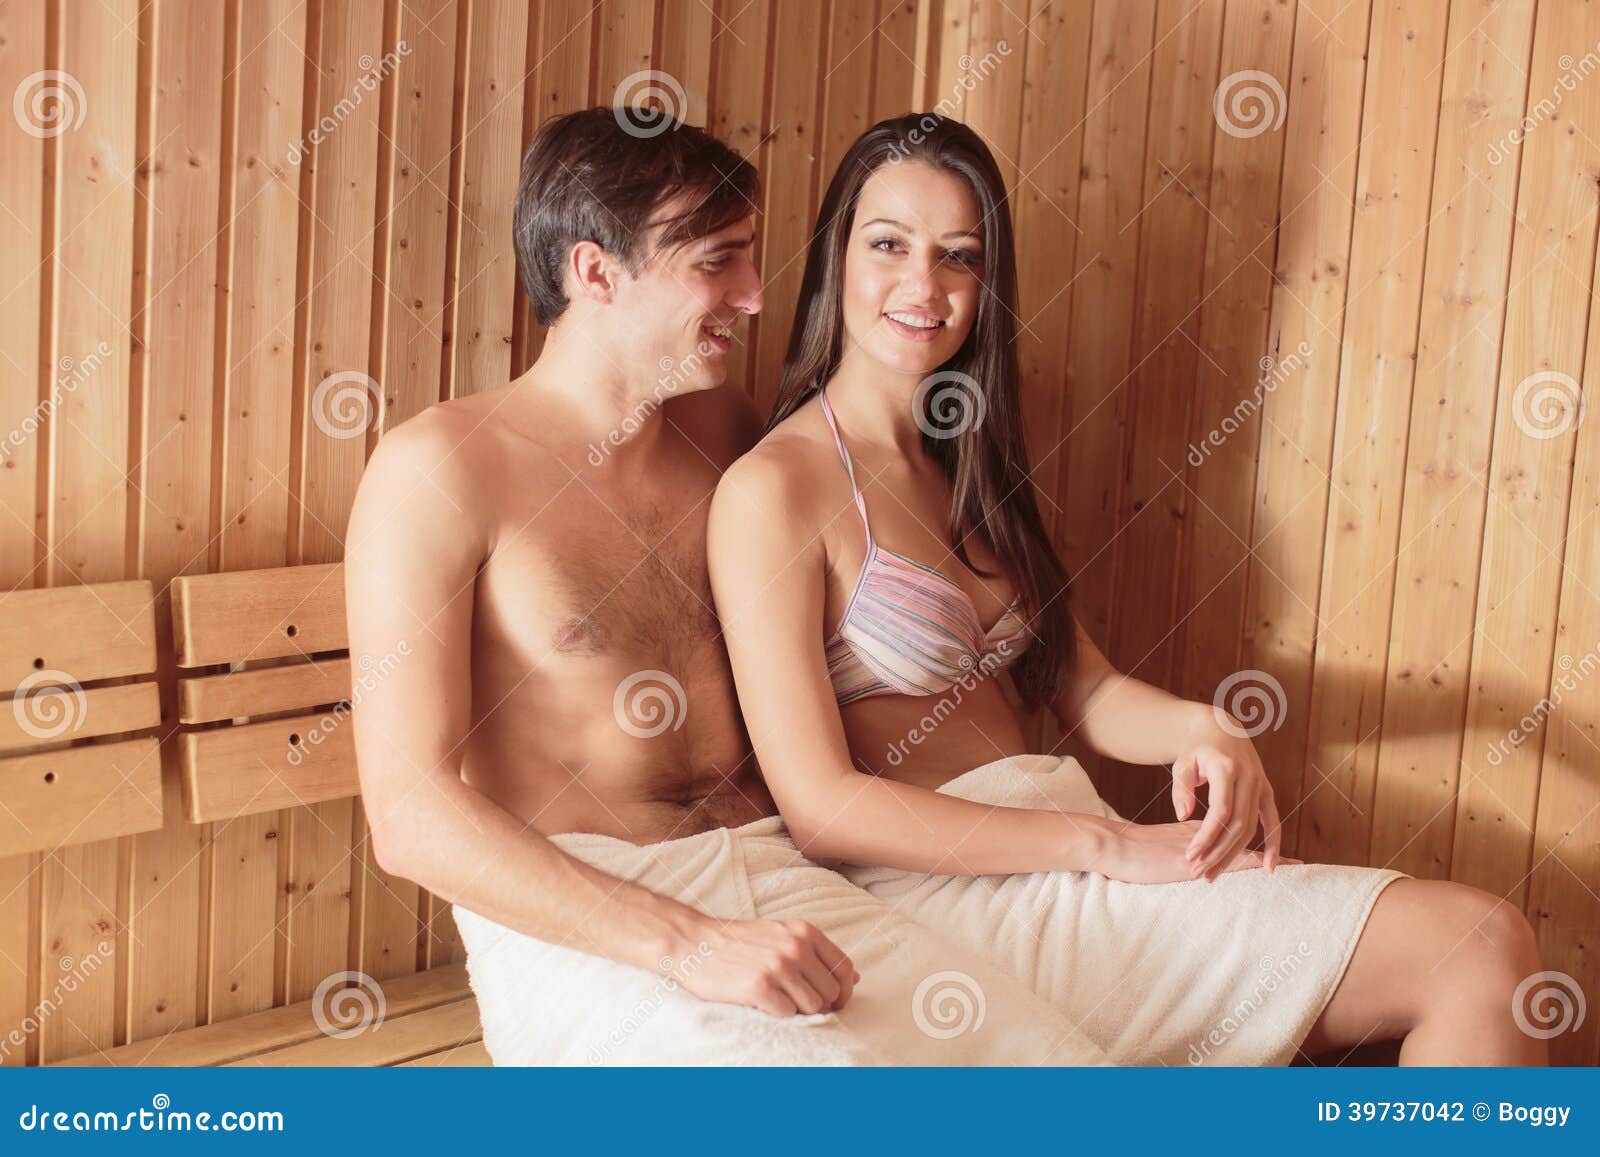 мы с сестрой моемся в бане голыми фото 76